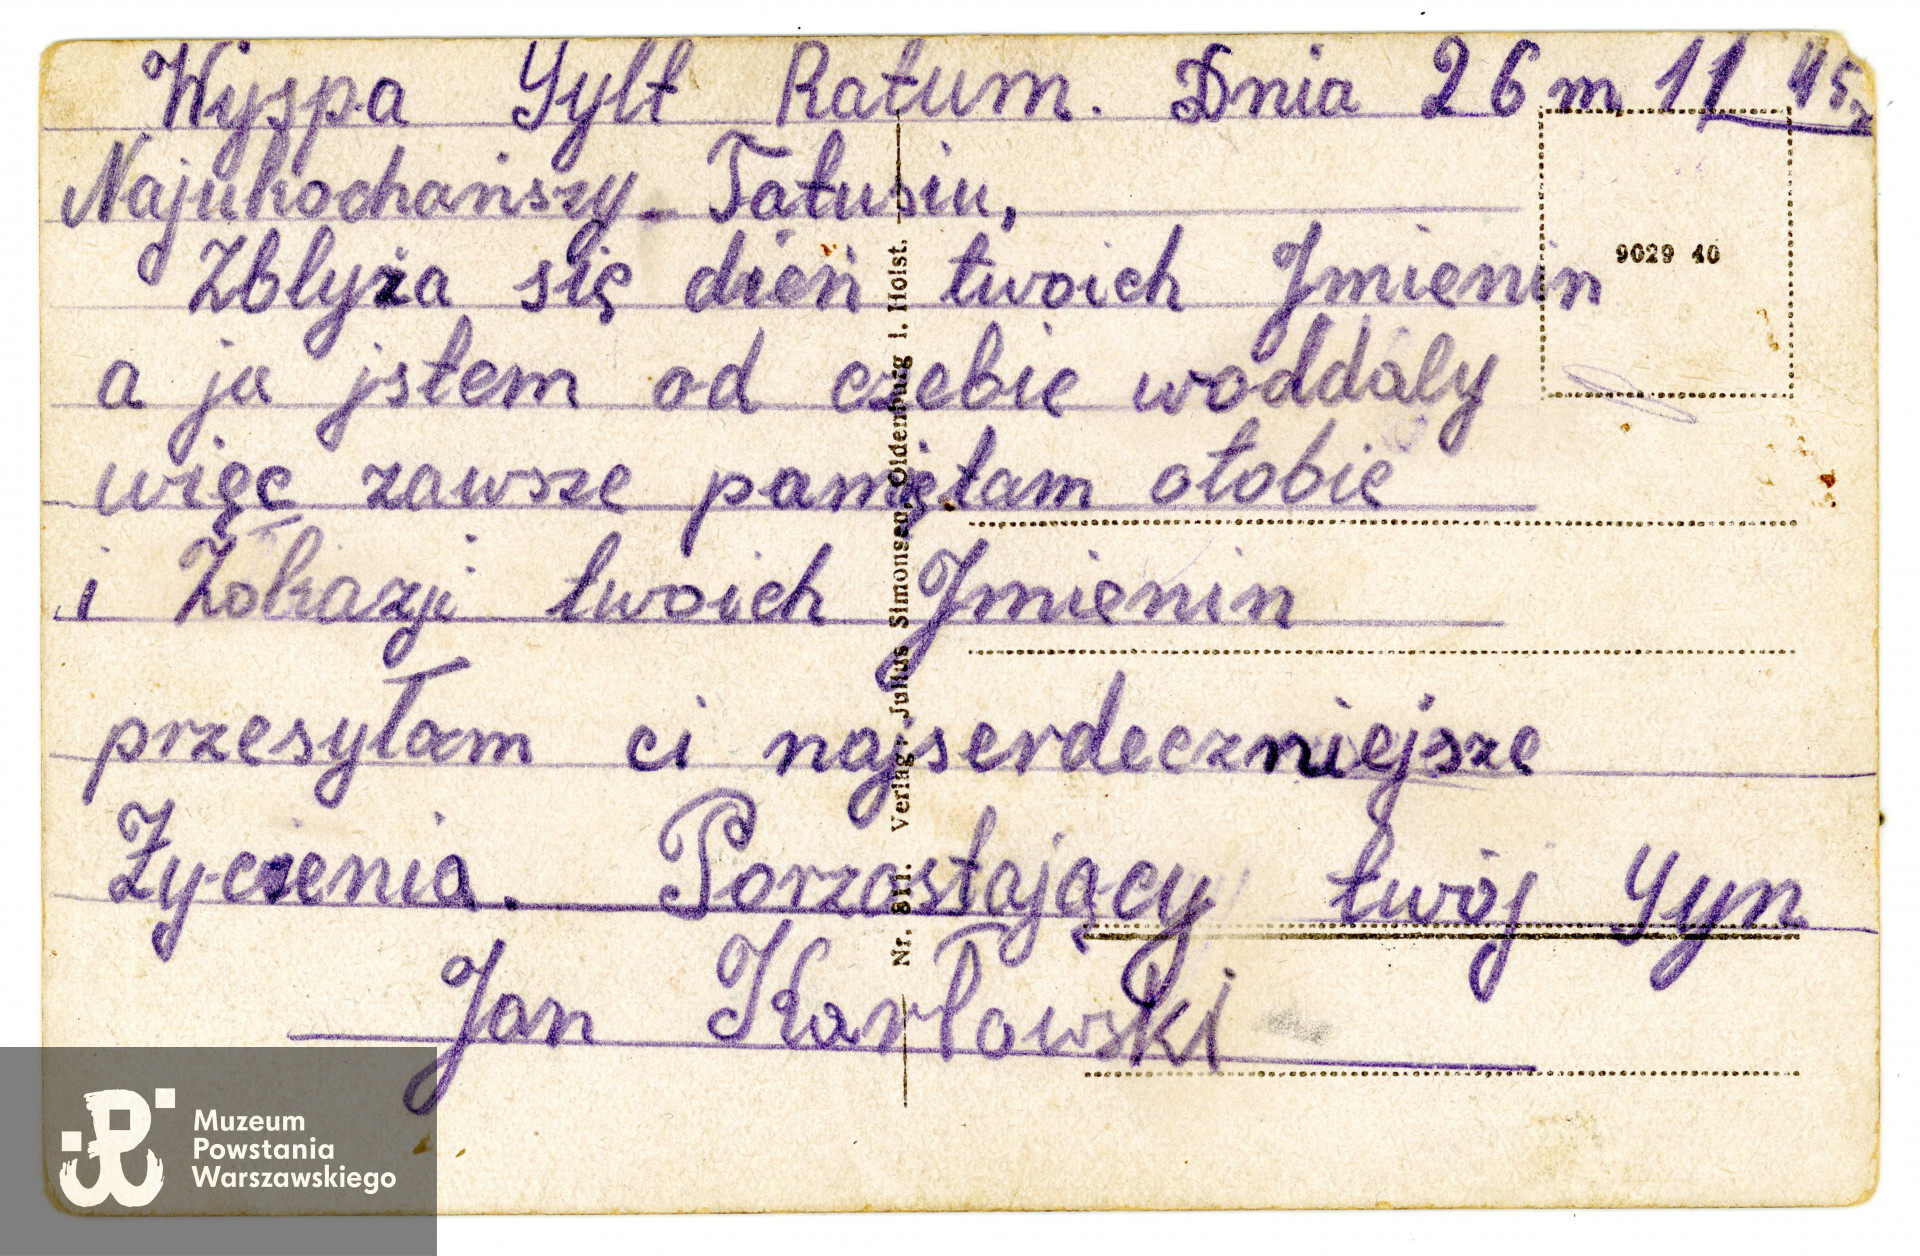 Karta pocztowa z wyspy Sylt, list napisany przez Jana Karłowskiego do ojca (życzenia imieninowe) 26 listopada 1945 roku. Karta została przywieziona do kraju przez  Adama Zbigniewa Domańskiego ps. Zbyszek, żołnierza batalionu "Ruczaj" (kompania "Habdank"),  a następnie  jeńca wojennego, z zamiarem dostarczenia jej rodzinie autora listu, jednak nie udało się  odnaleźć adresata. Obecnie list znajduje się w archiwum rodzinnym potomków Adama Domańskiego "Zbyszka", którzy za pośrednictwem Muzeum Powstania Warszawskiego proszą ewentualnych spadkobierców Jana Karłowskiego o kontakt.